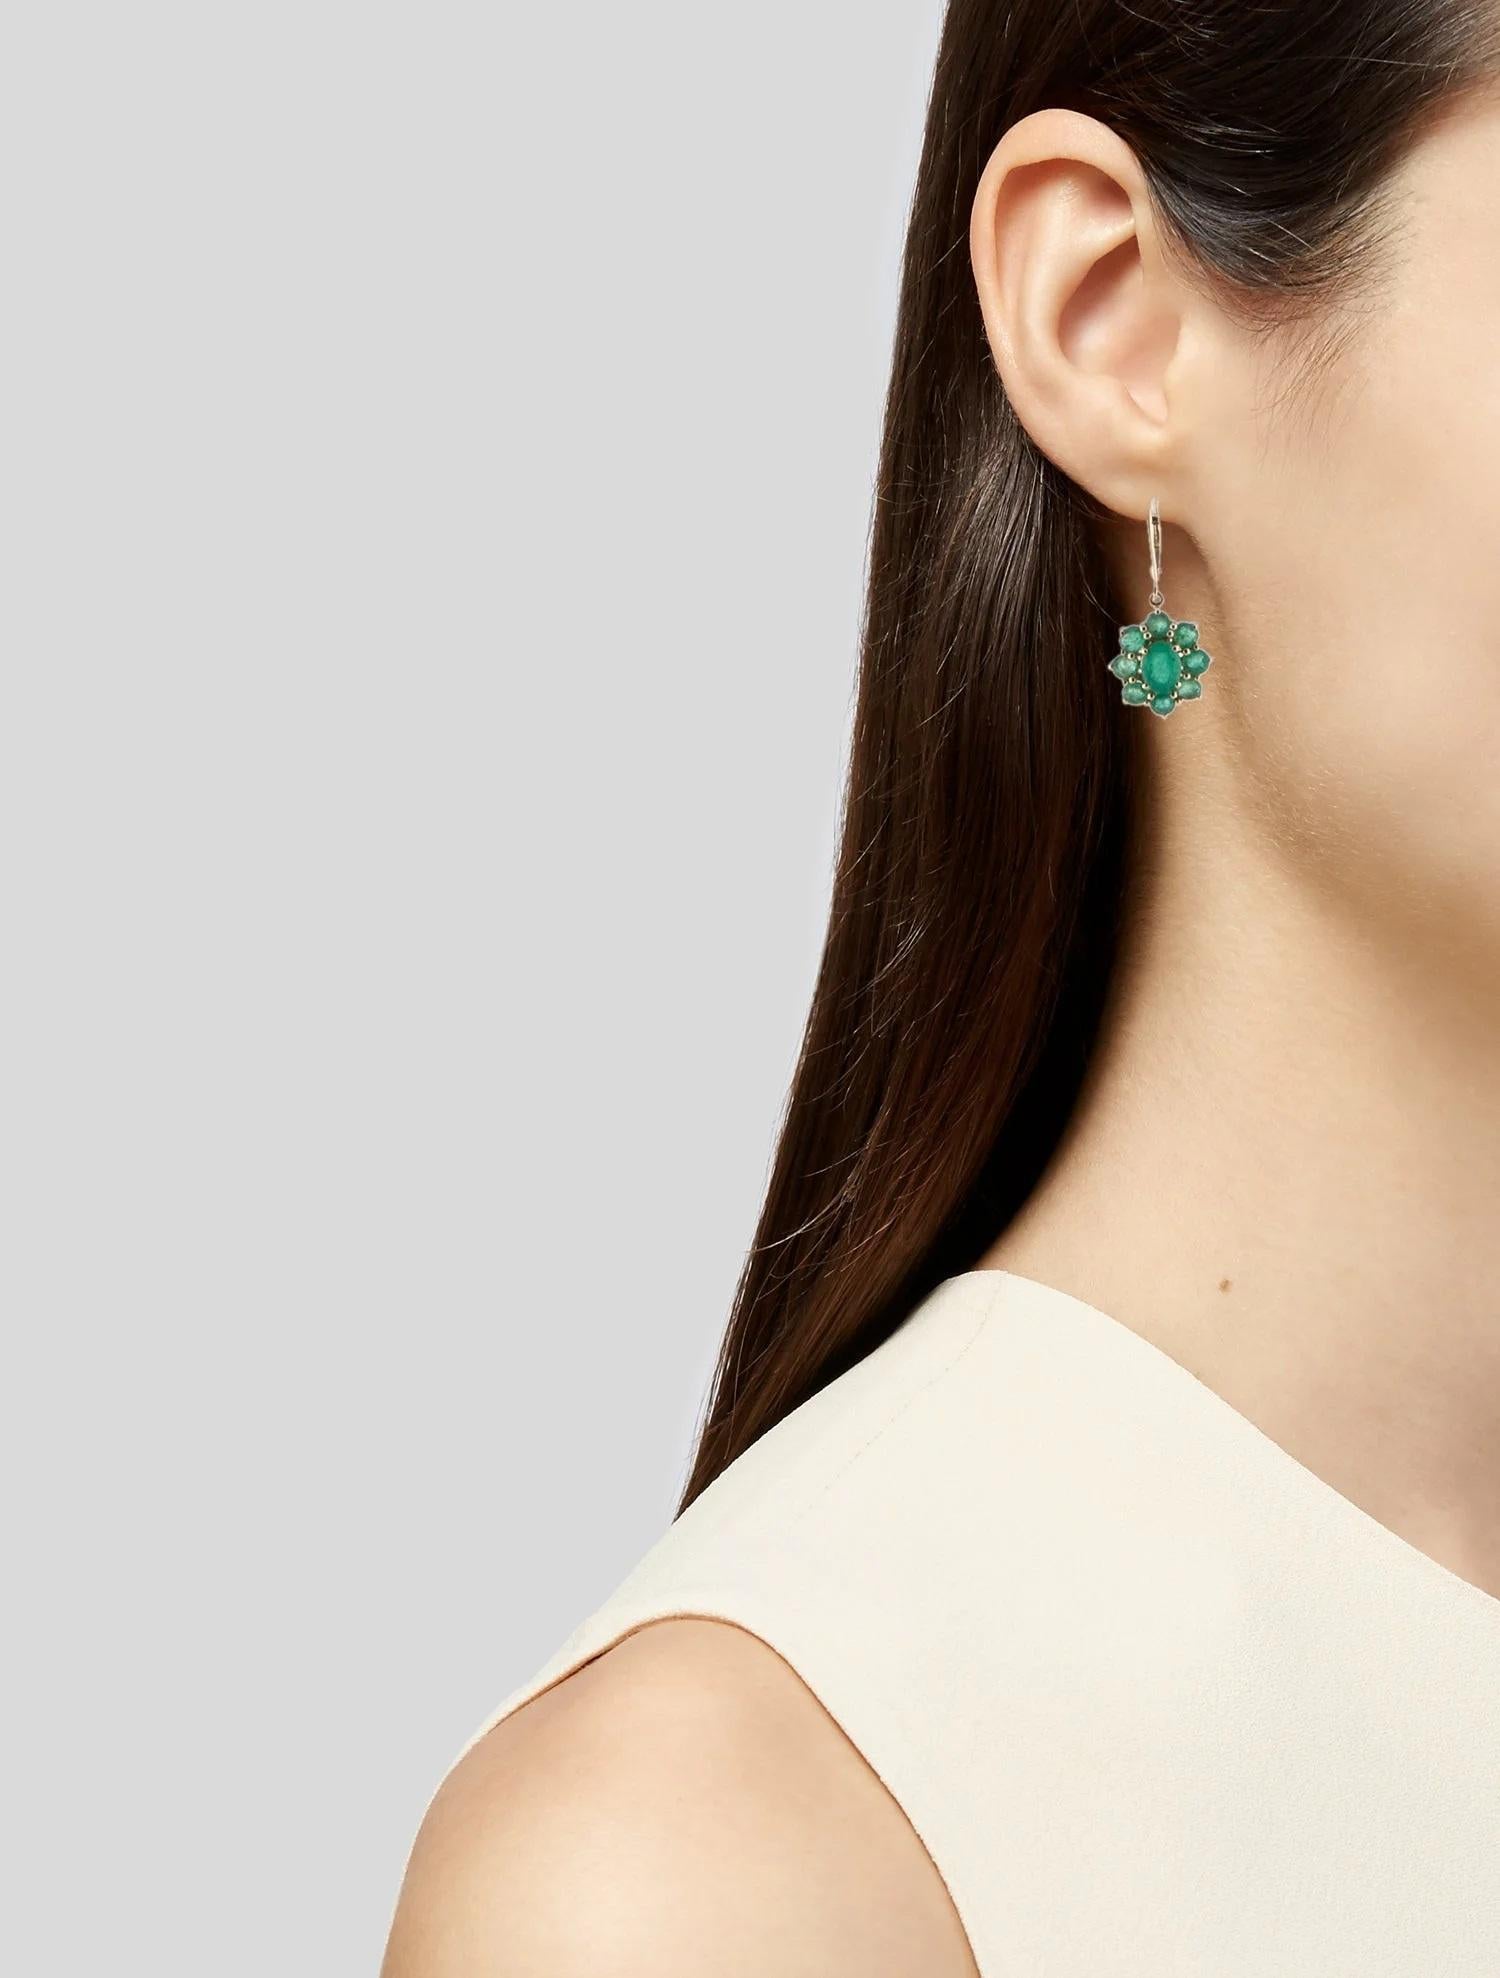 Erhöhen Sie Ihren Stil mit diesen exquisiten 14K Emerald Drop Earrings. Diese aus luxuriösem Gelbgold gefertigten Ohrringe bestechen durch eine Kombination aus facettierten runden und ovalen Brillantsmaragden von insgesamt 3,66 bzw. 2,12 Karat. Die